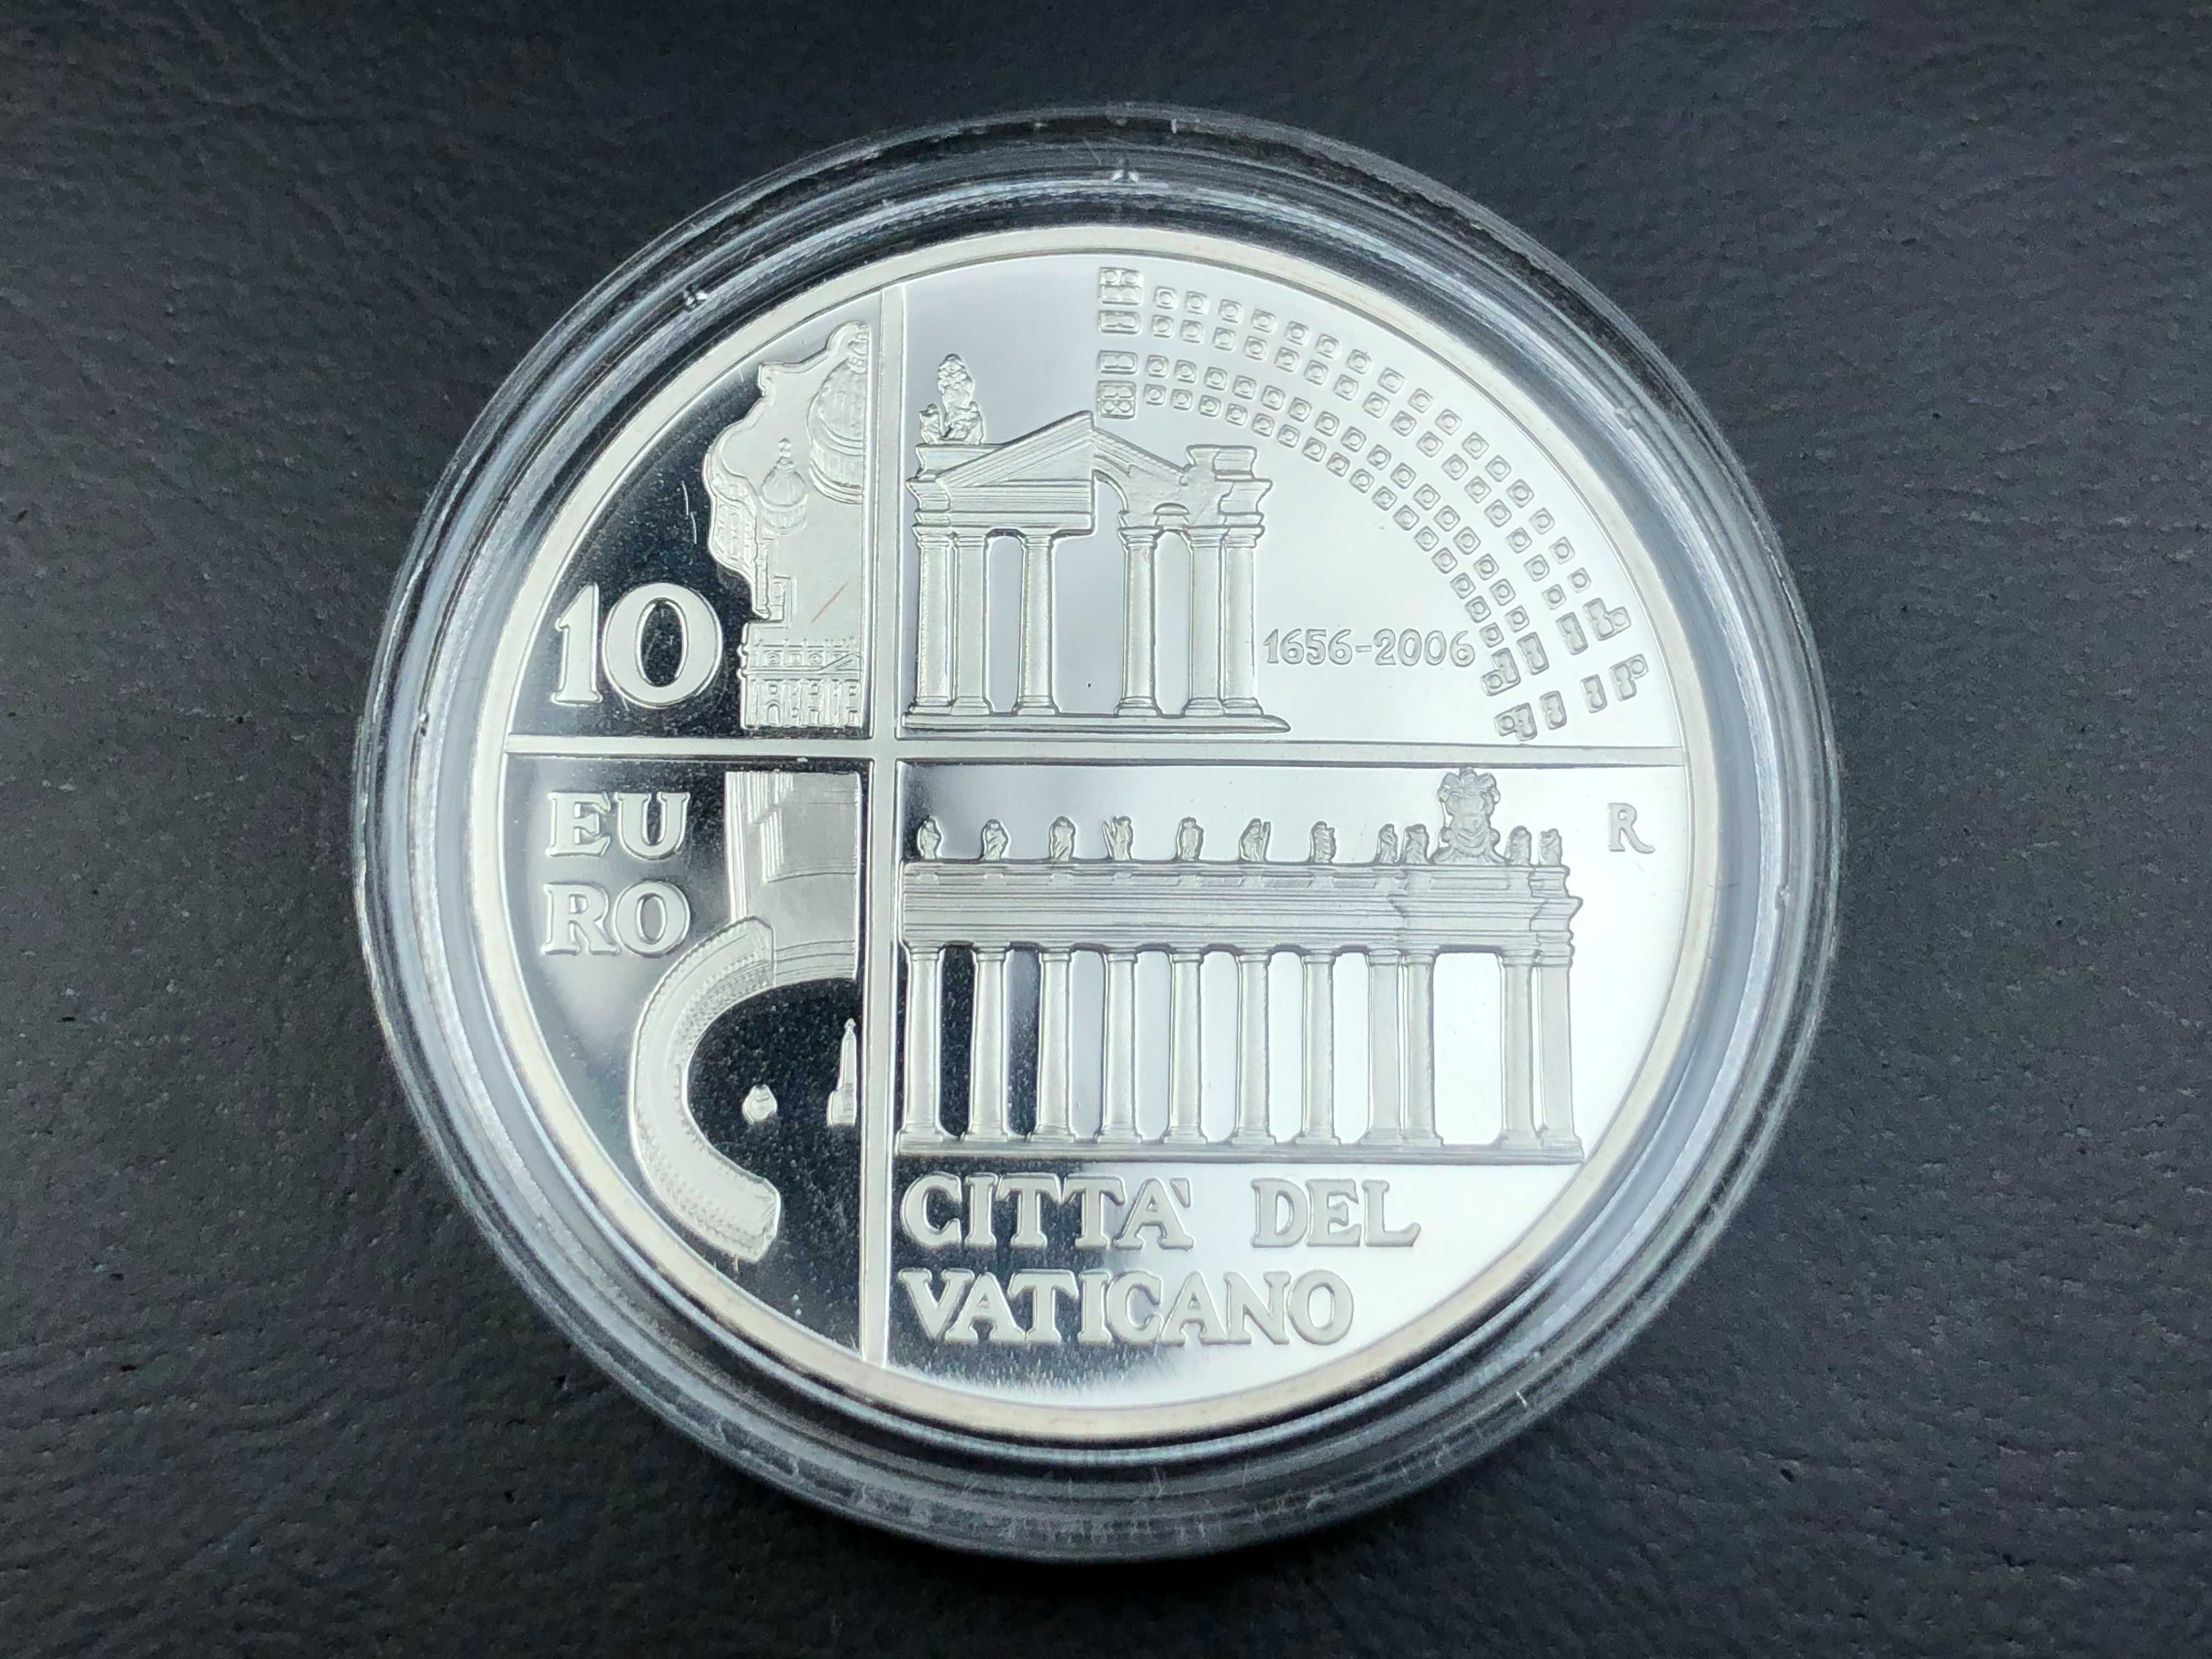 Vaticano Prata Proof 10 Euros 2006 com estojo -  Colonato de São Pedro